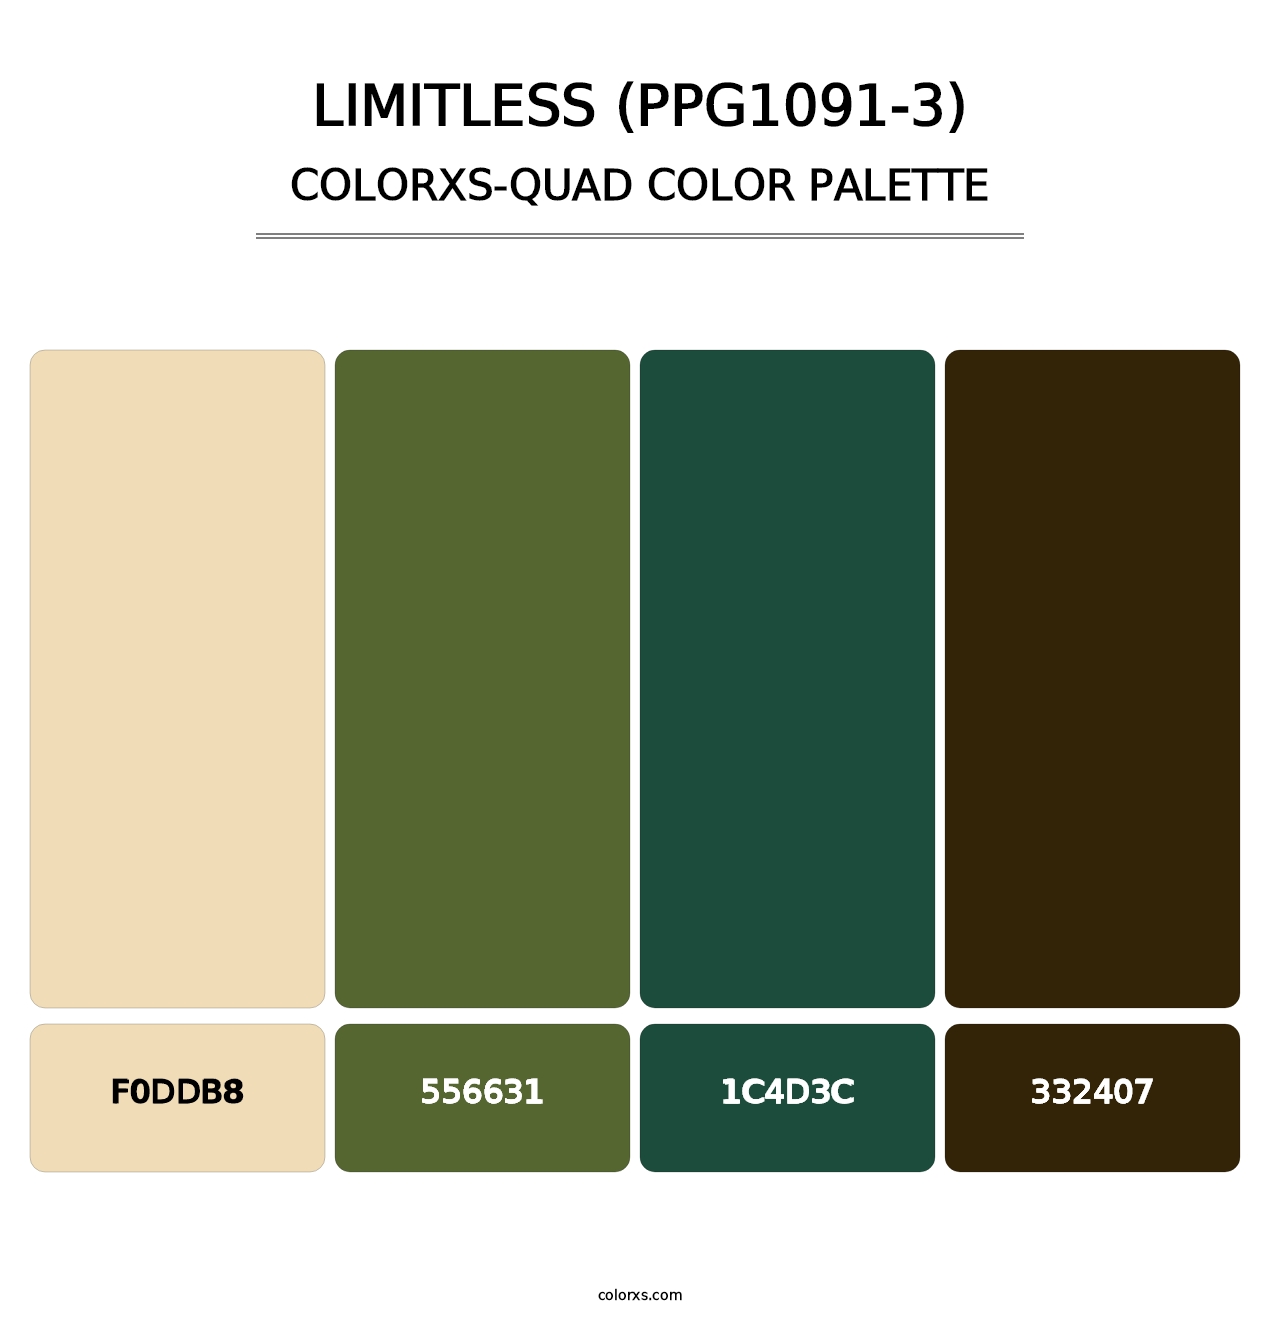 Limitless (PPG1091-3) - Colorxs Quad Palette